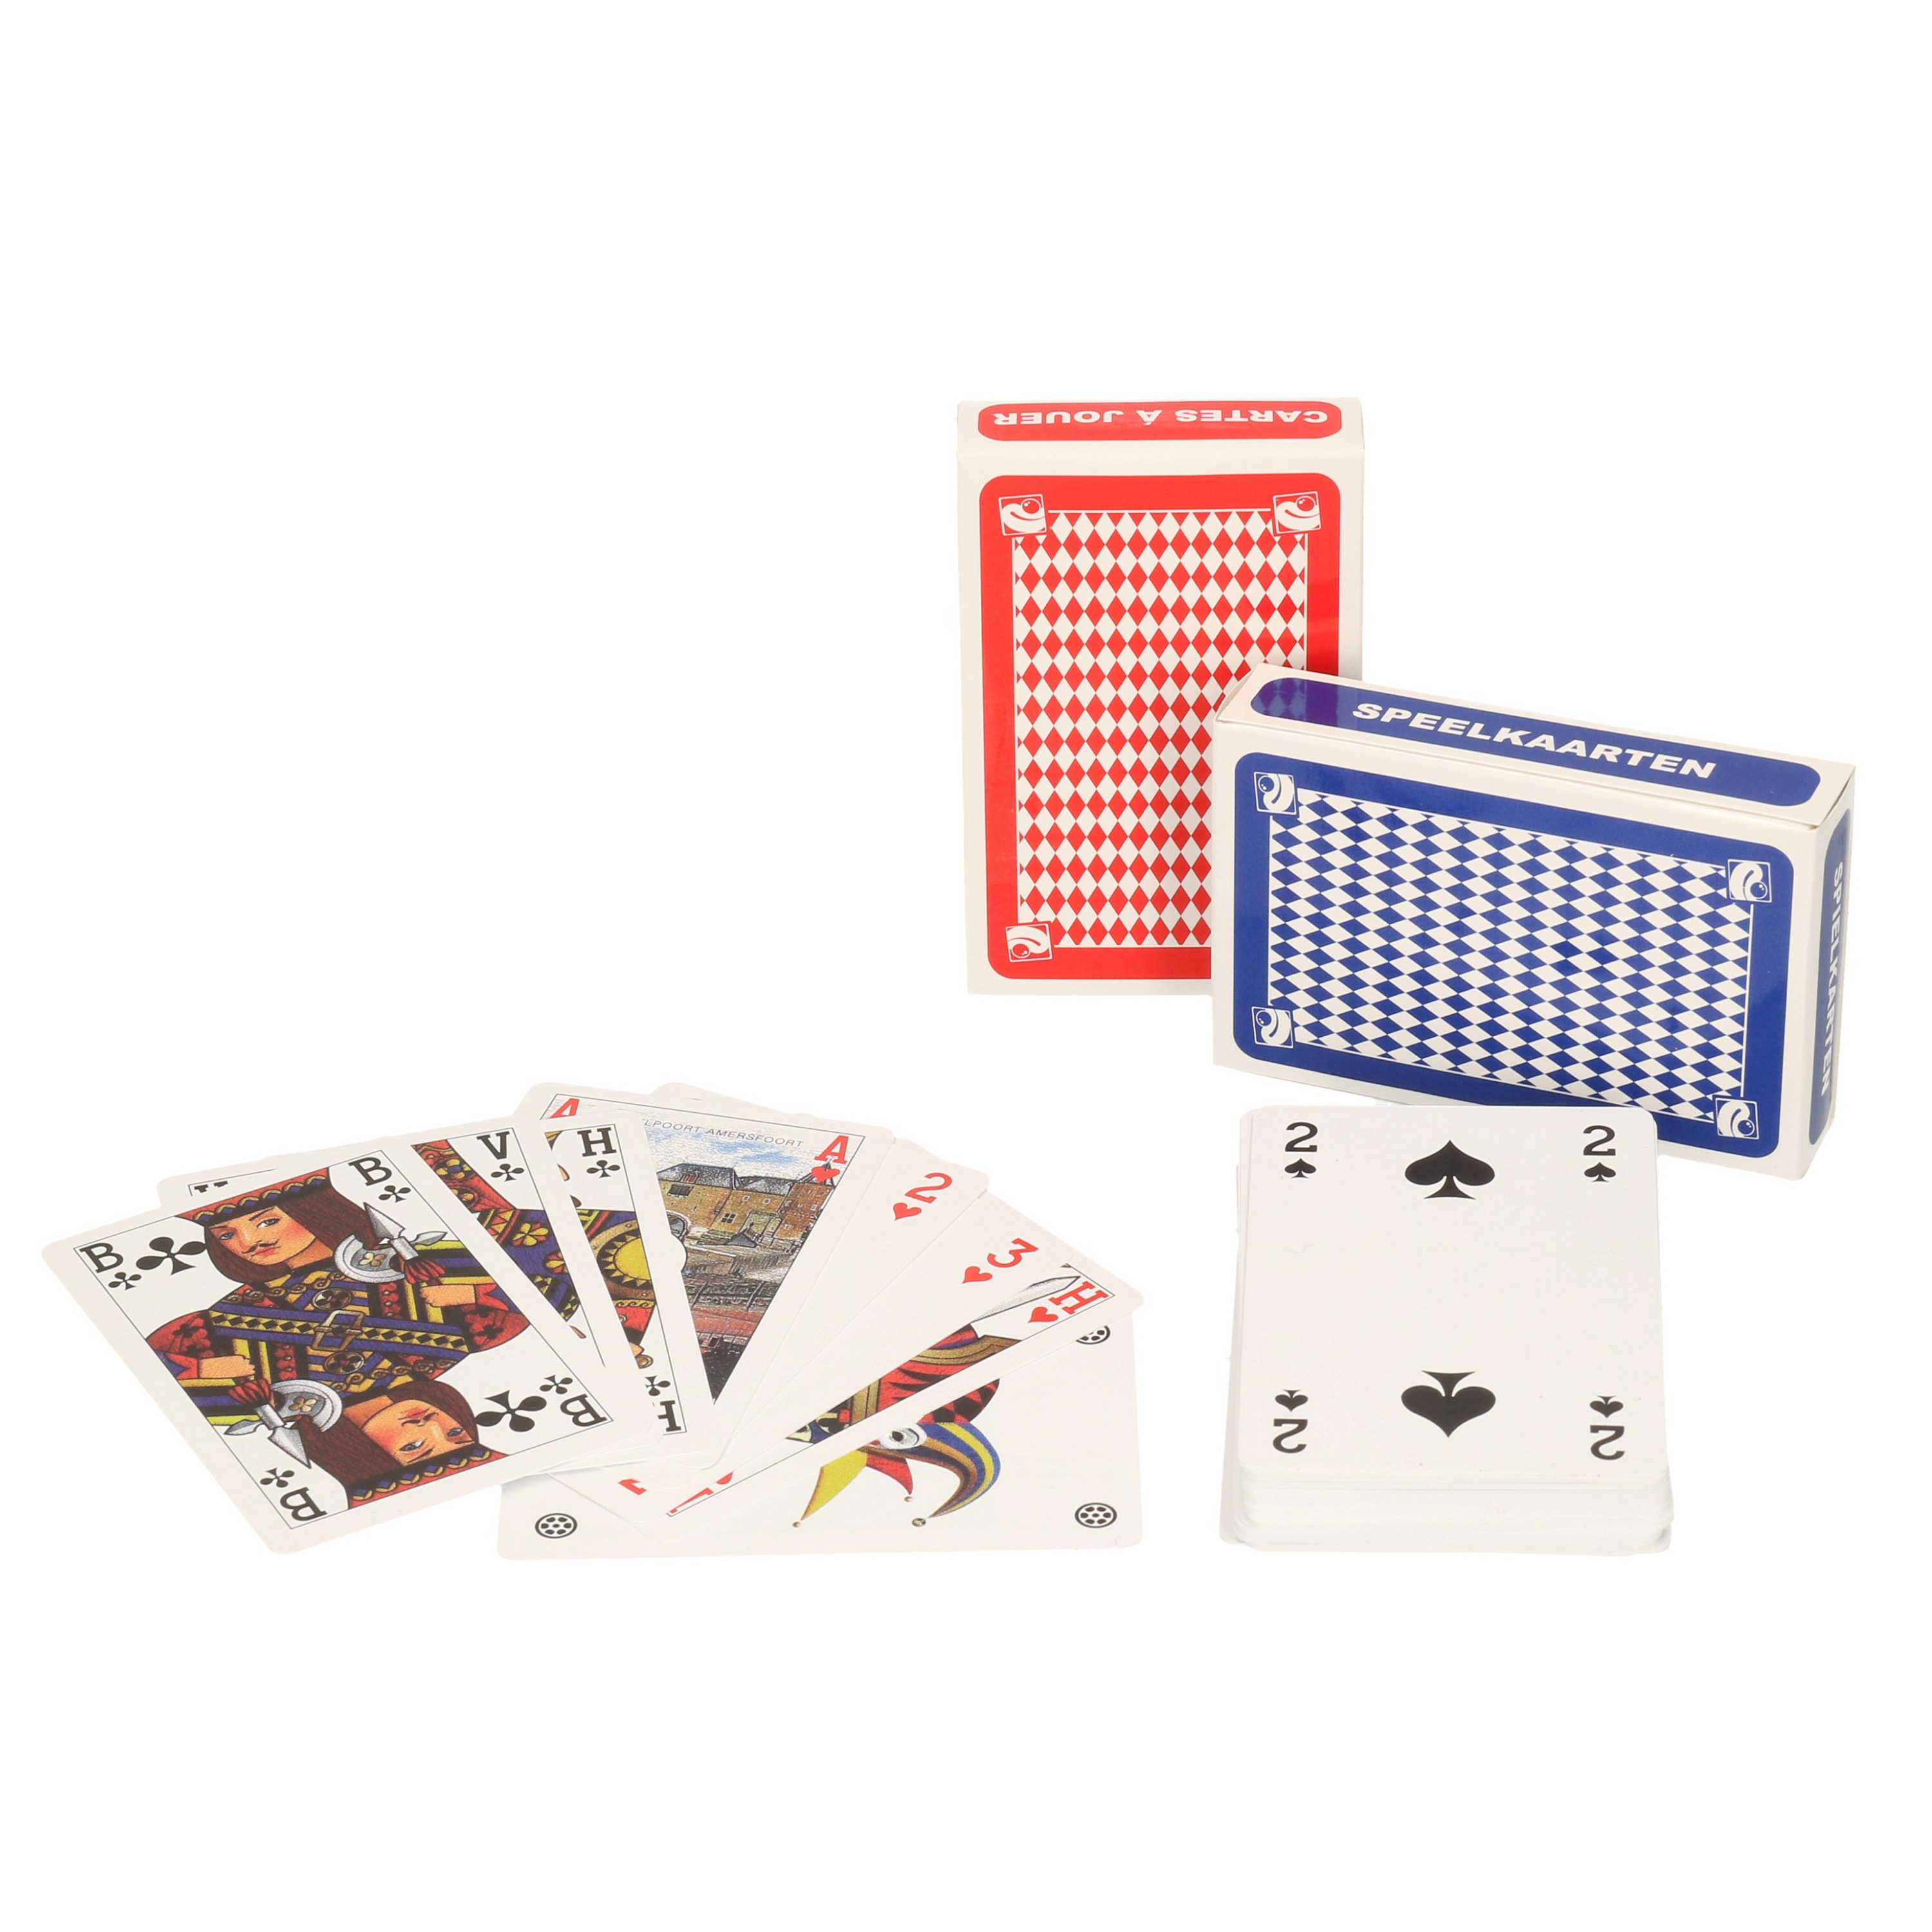 Afbeelding van Set van 2x clown games speelkaarten rood en blauw karton